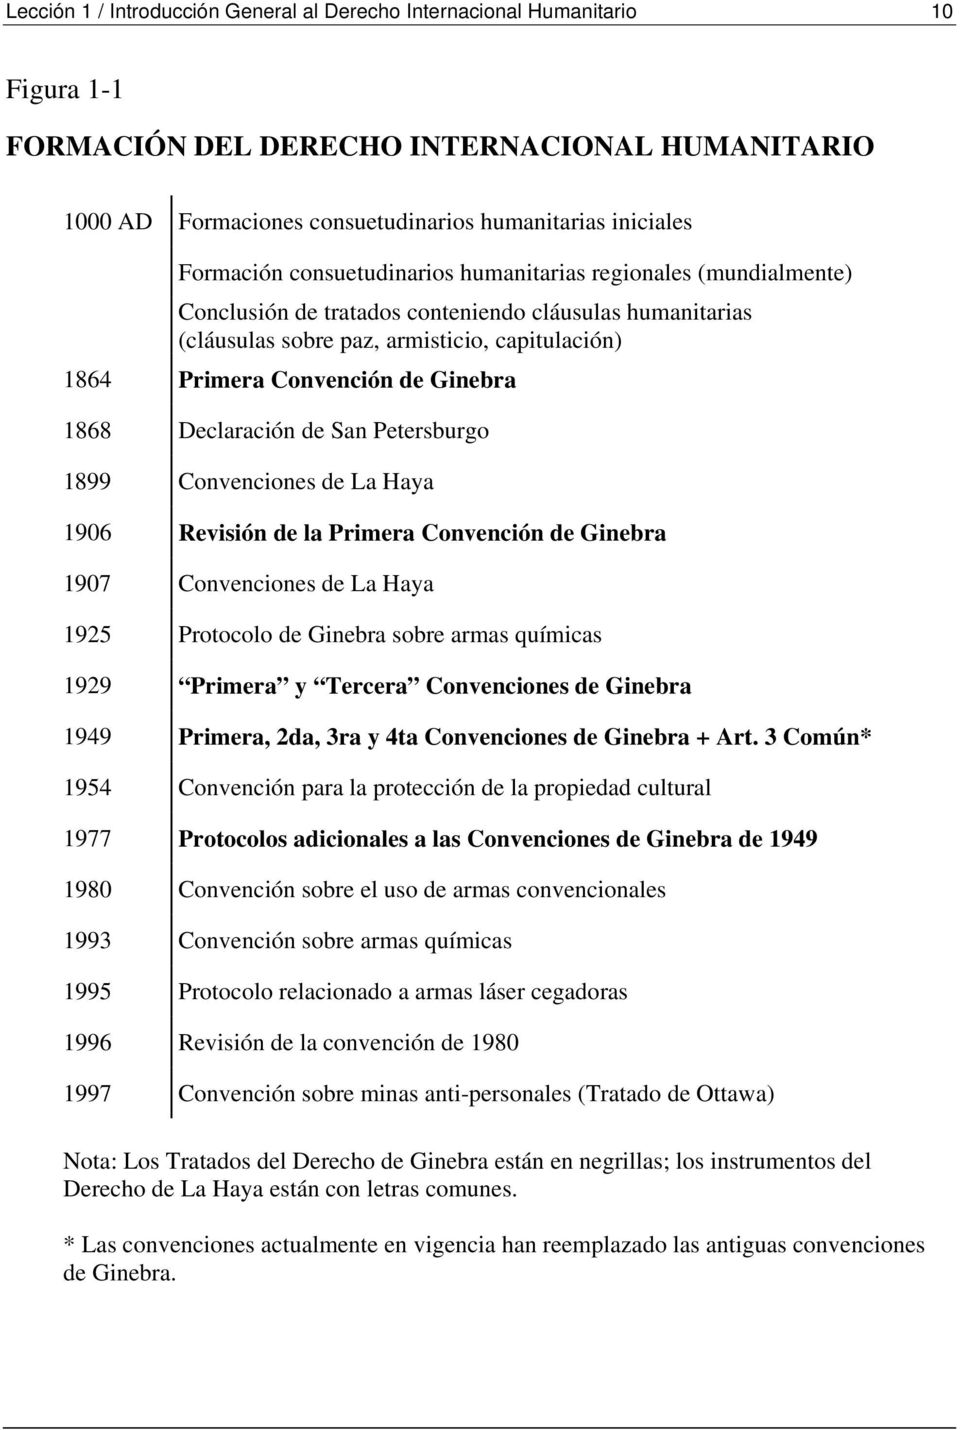 Ginebra 1868 Declaración de San Petersburgo 1899 Convenciones de La Haya 1906 Revisión de la Primera Convención de Ginebra 1907 Convenciones de La Haya 1925 Protocolo de Ginebra sobre armas químicas